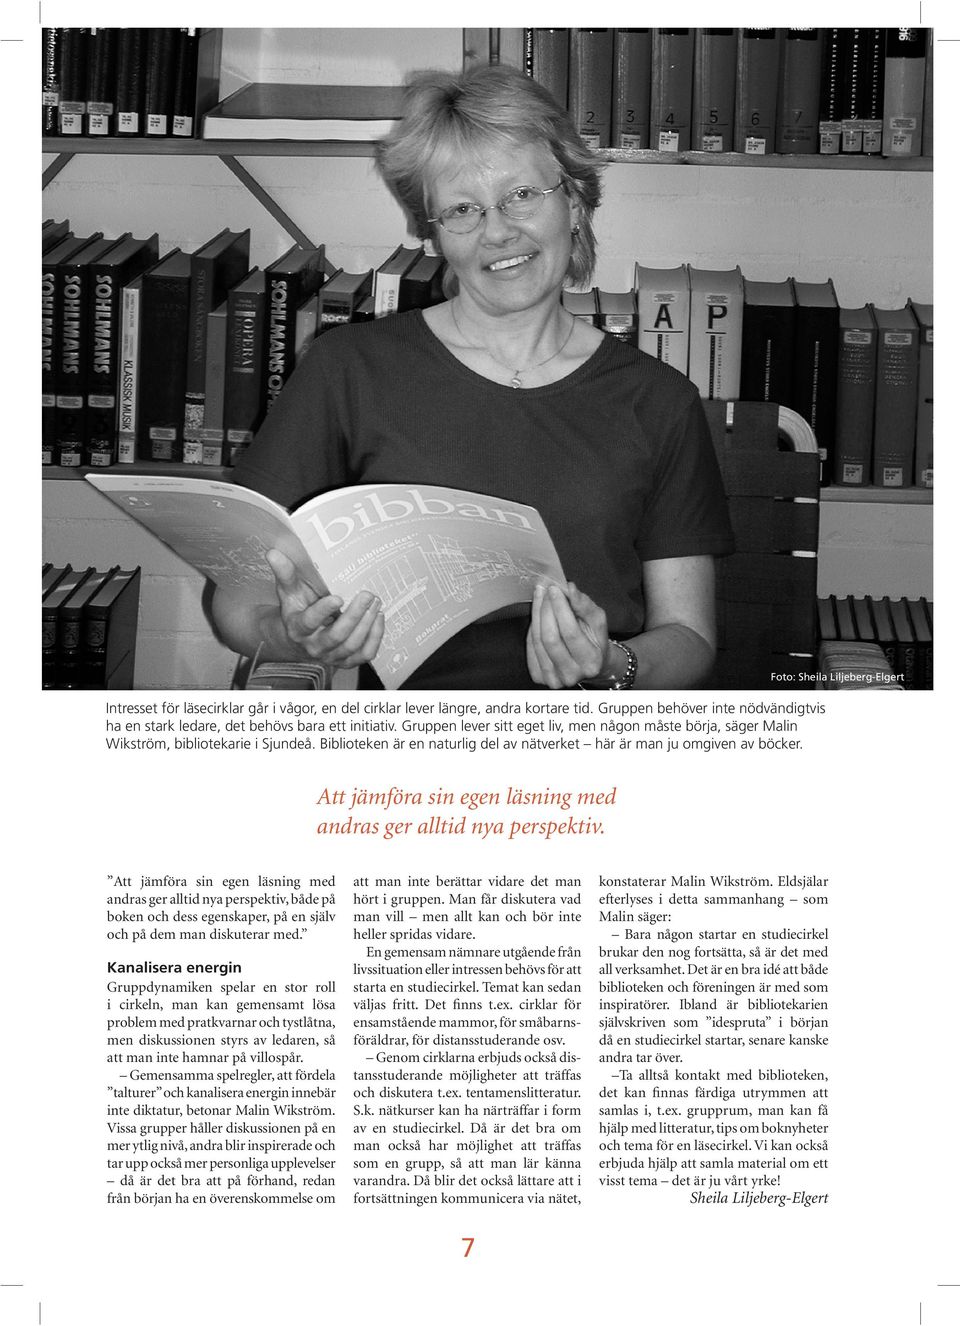 Foto: Sheila Liljeberg-Elgert Att jämföra sin egen läsning med andras ger alltid nya perspektiv.